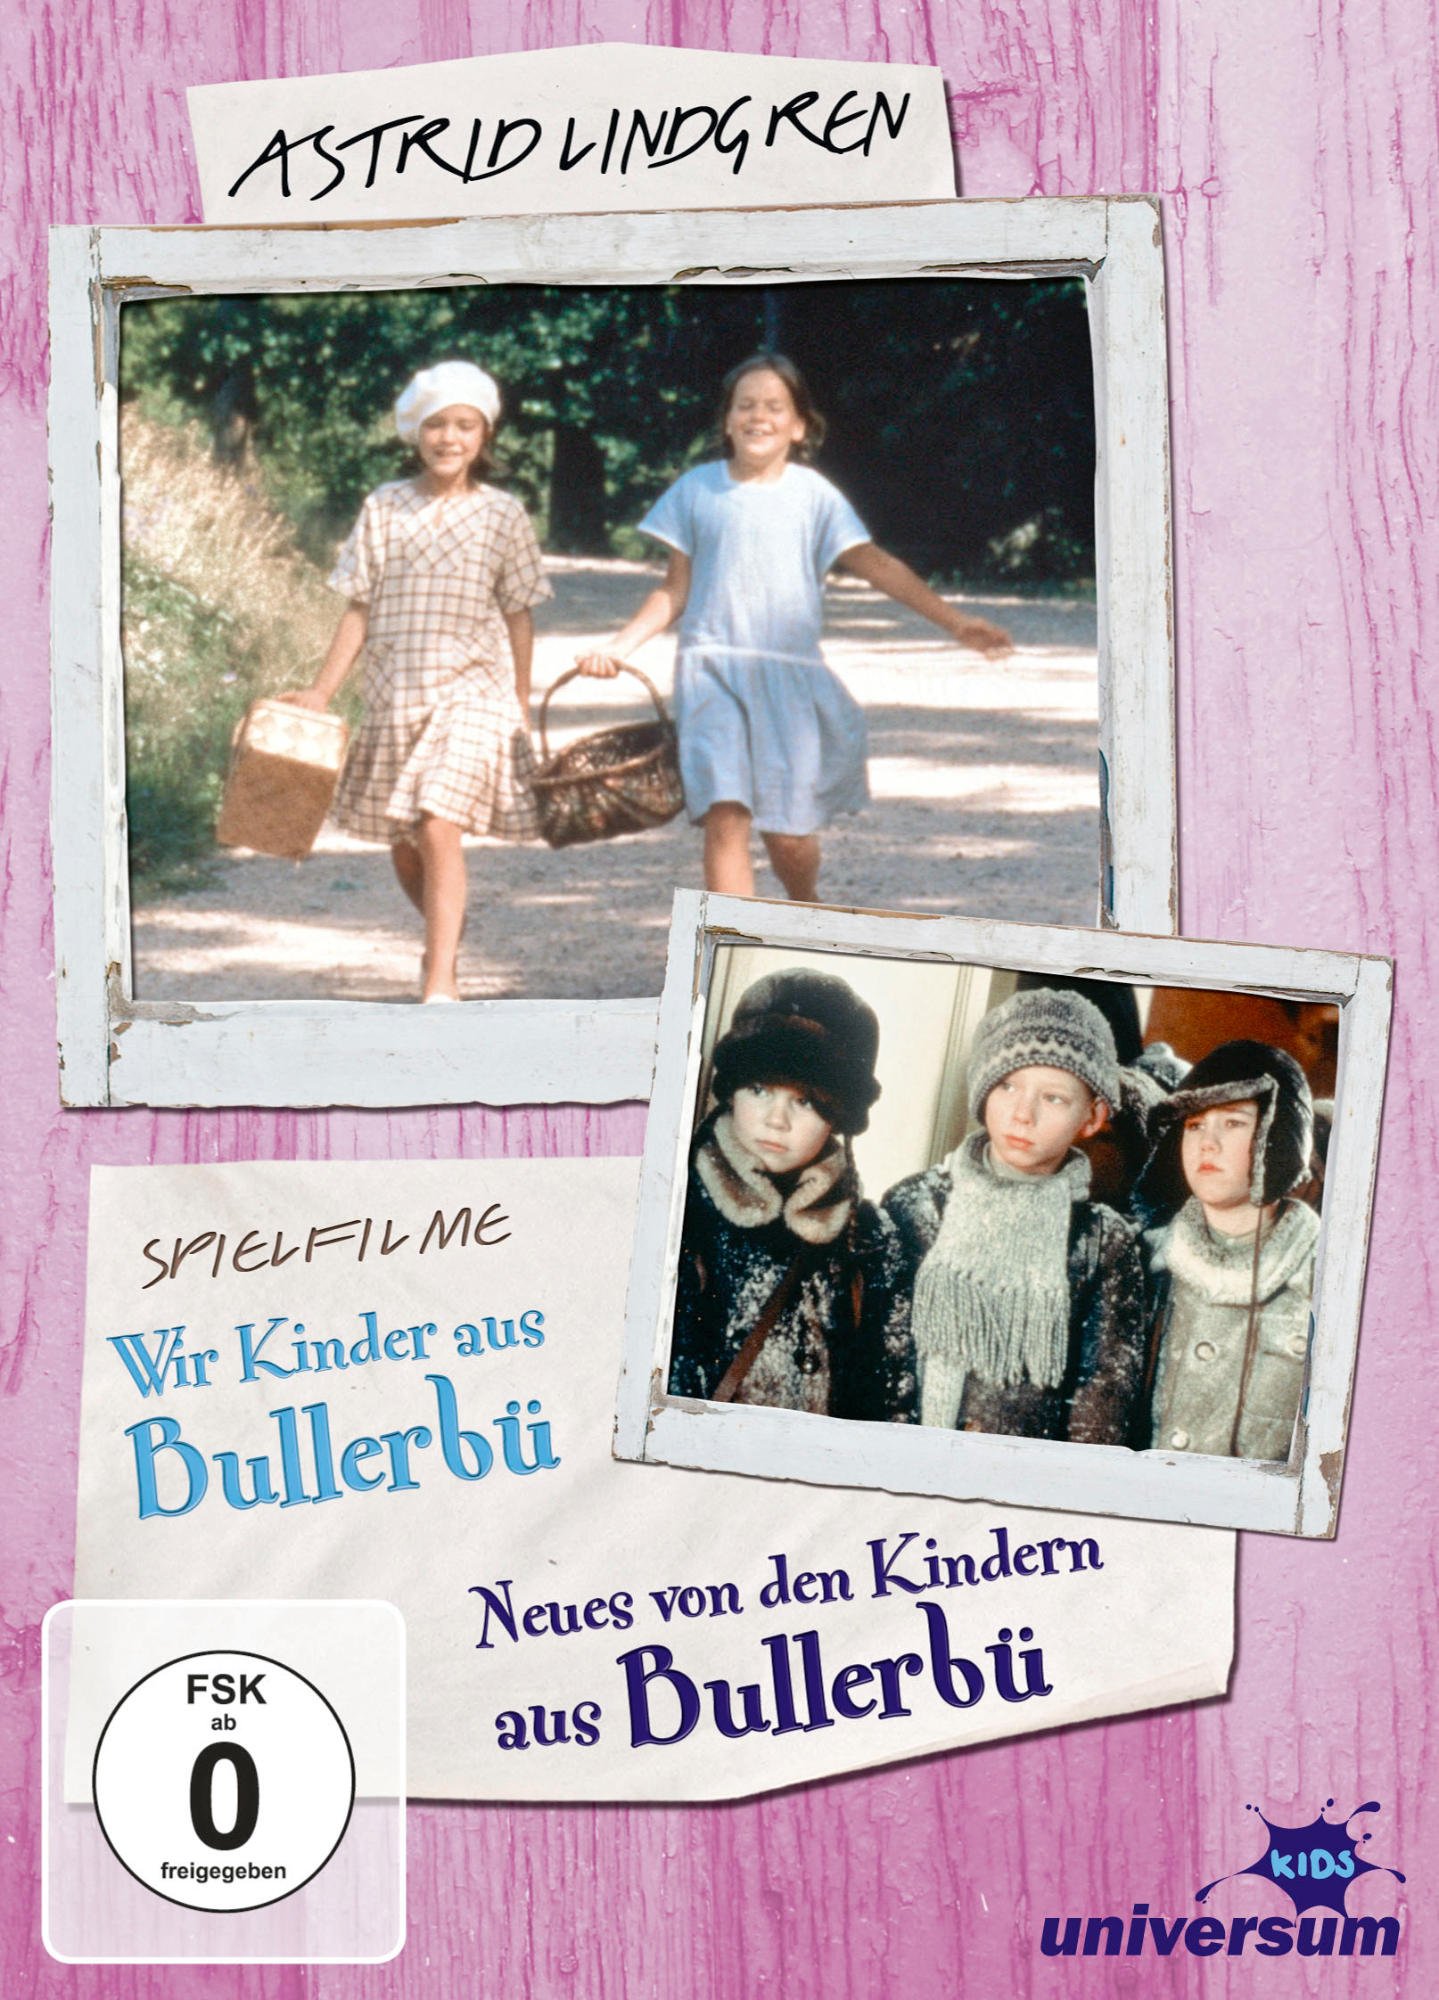 Astrid Lindgren: Bullerbü DVD - Box